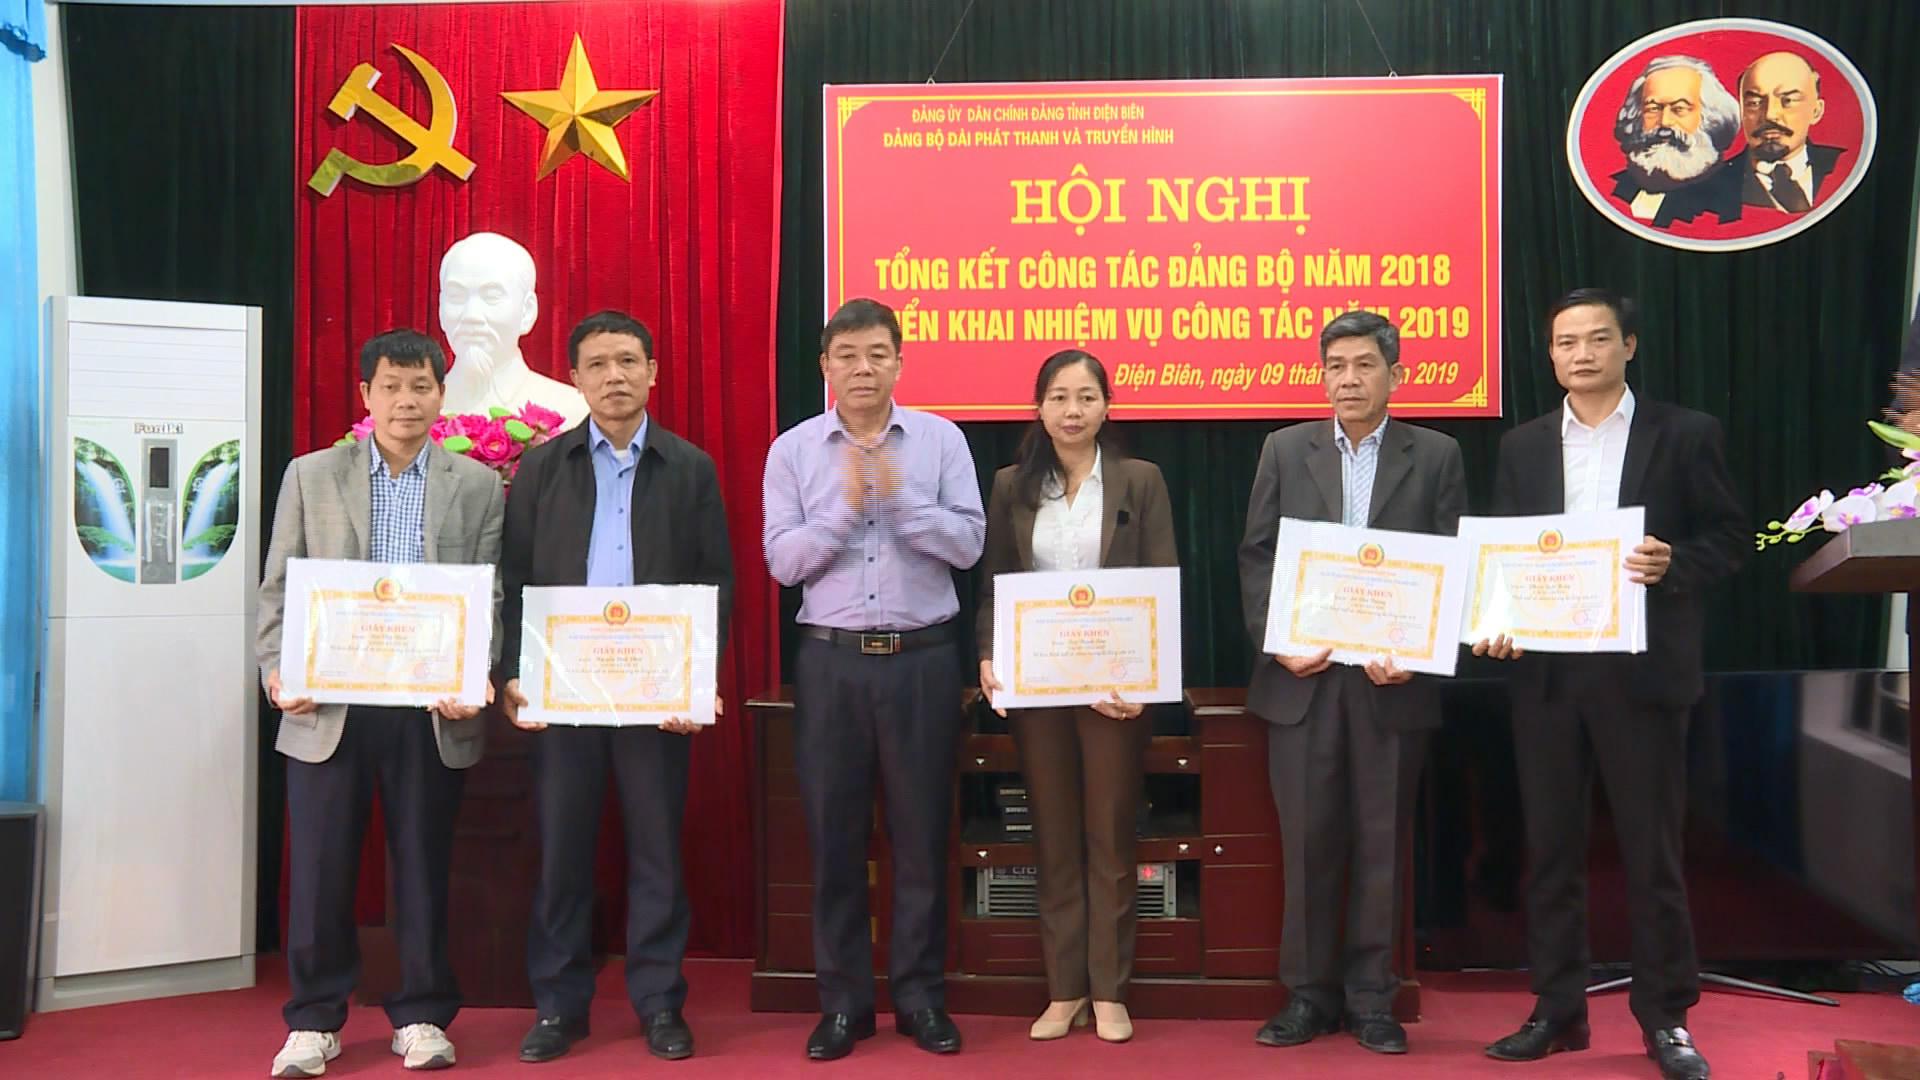 Đồng chí Lường Văn Xuyên - Bí thư Đảng bộ, Giám đốc Đài PT - TH tỉnh Điện Biên tặng giấy khen cho các cá nhân thành tích xuất sắc trong thực hiện nhiệm vụ công tác Đảng năm 2018.